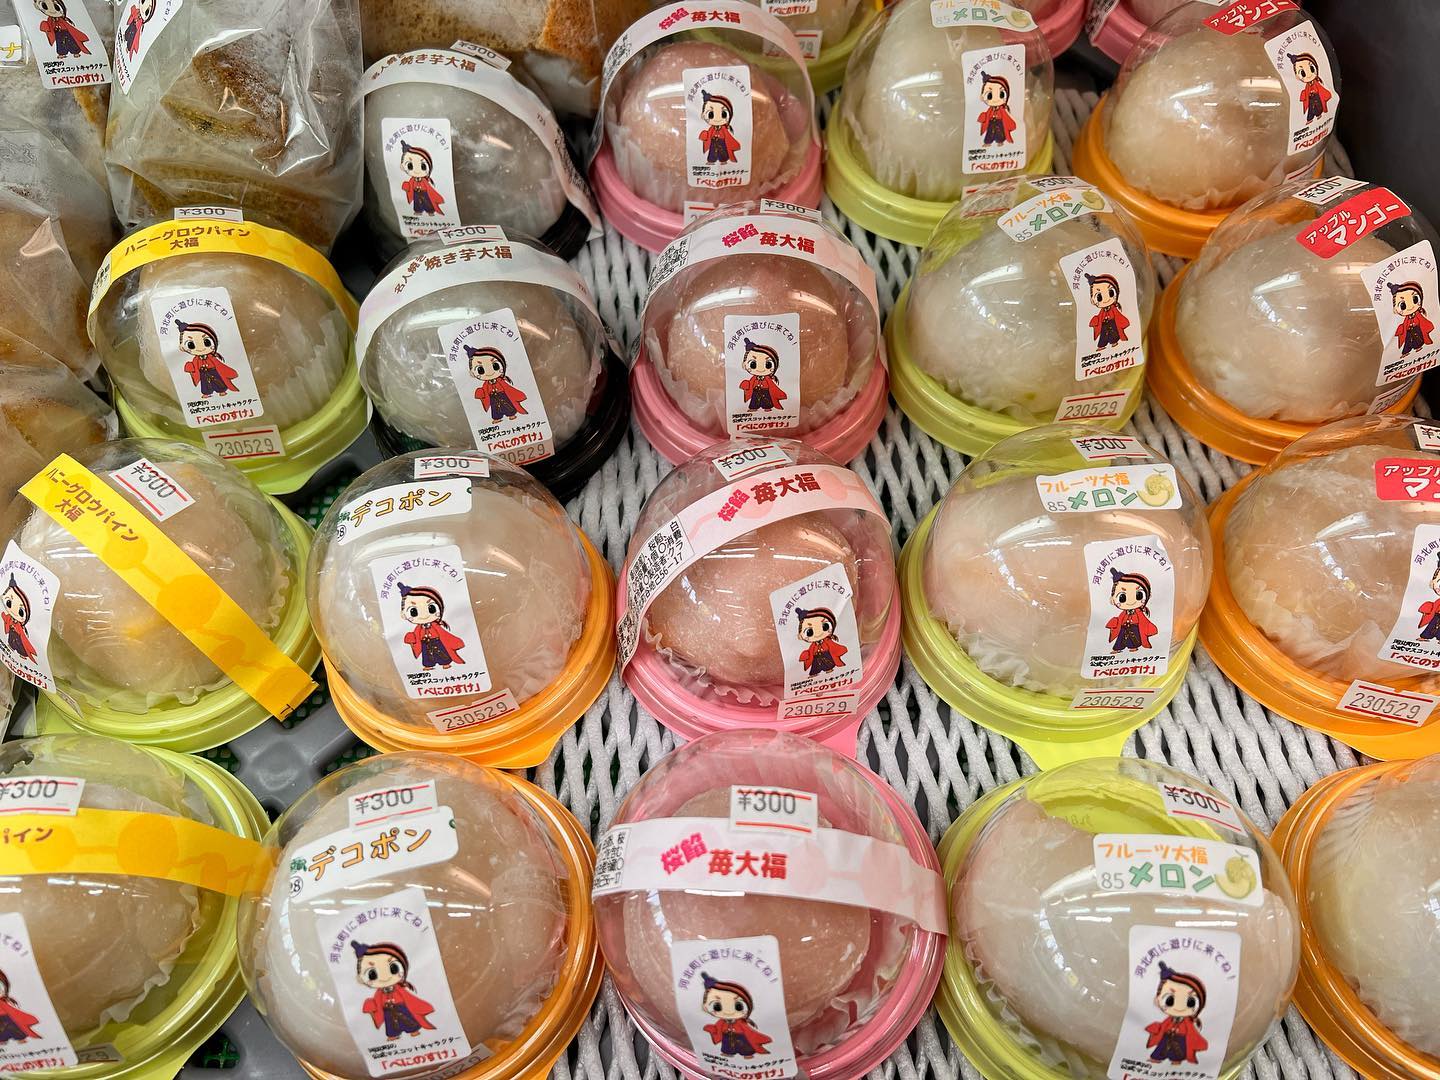 フルーツ大福
『アップルマンゴー大福』
新発売️
フルーツカップソフトクリーム
種類がいっぱいあって迷っちゃうけど、どれを選んでも美味しいよ️